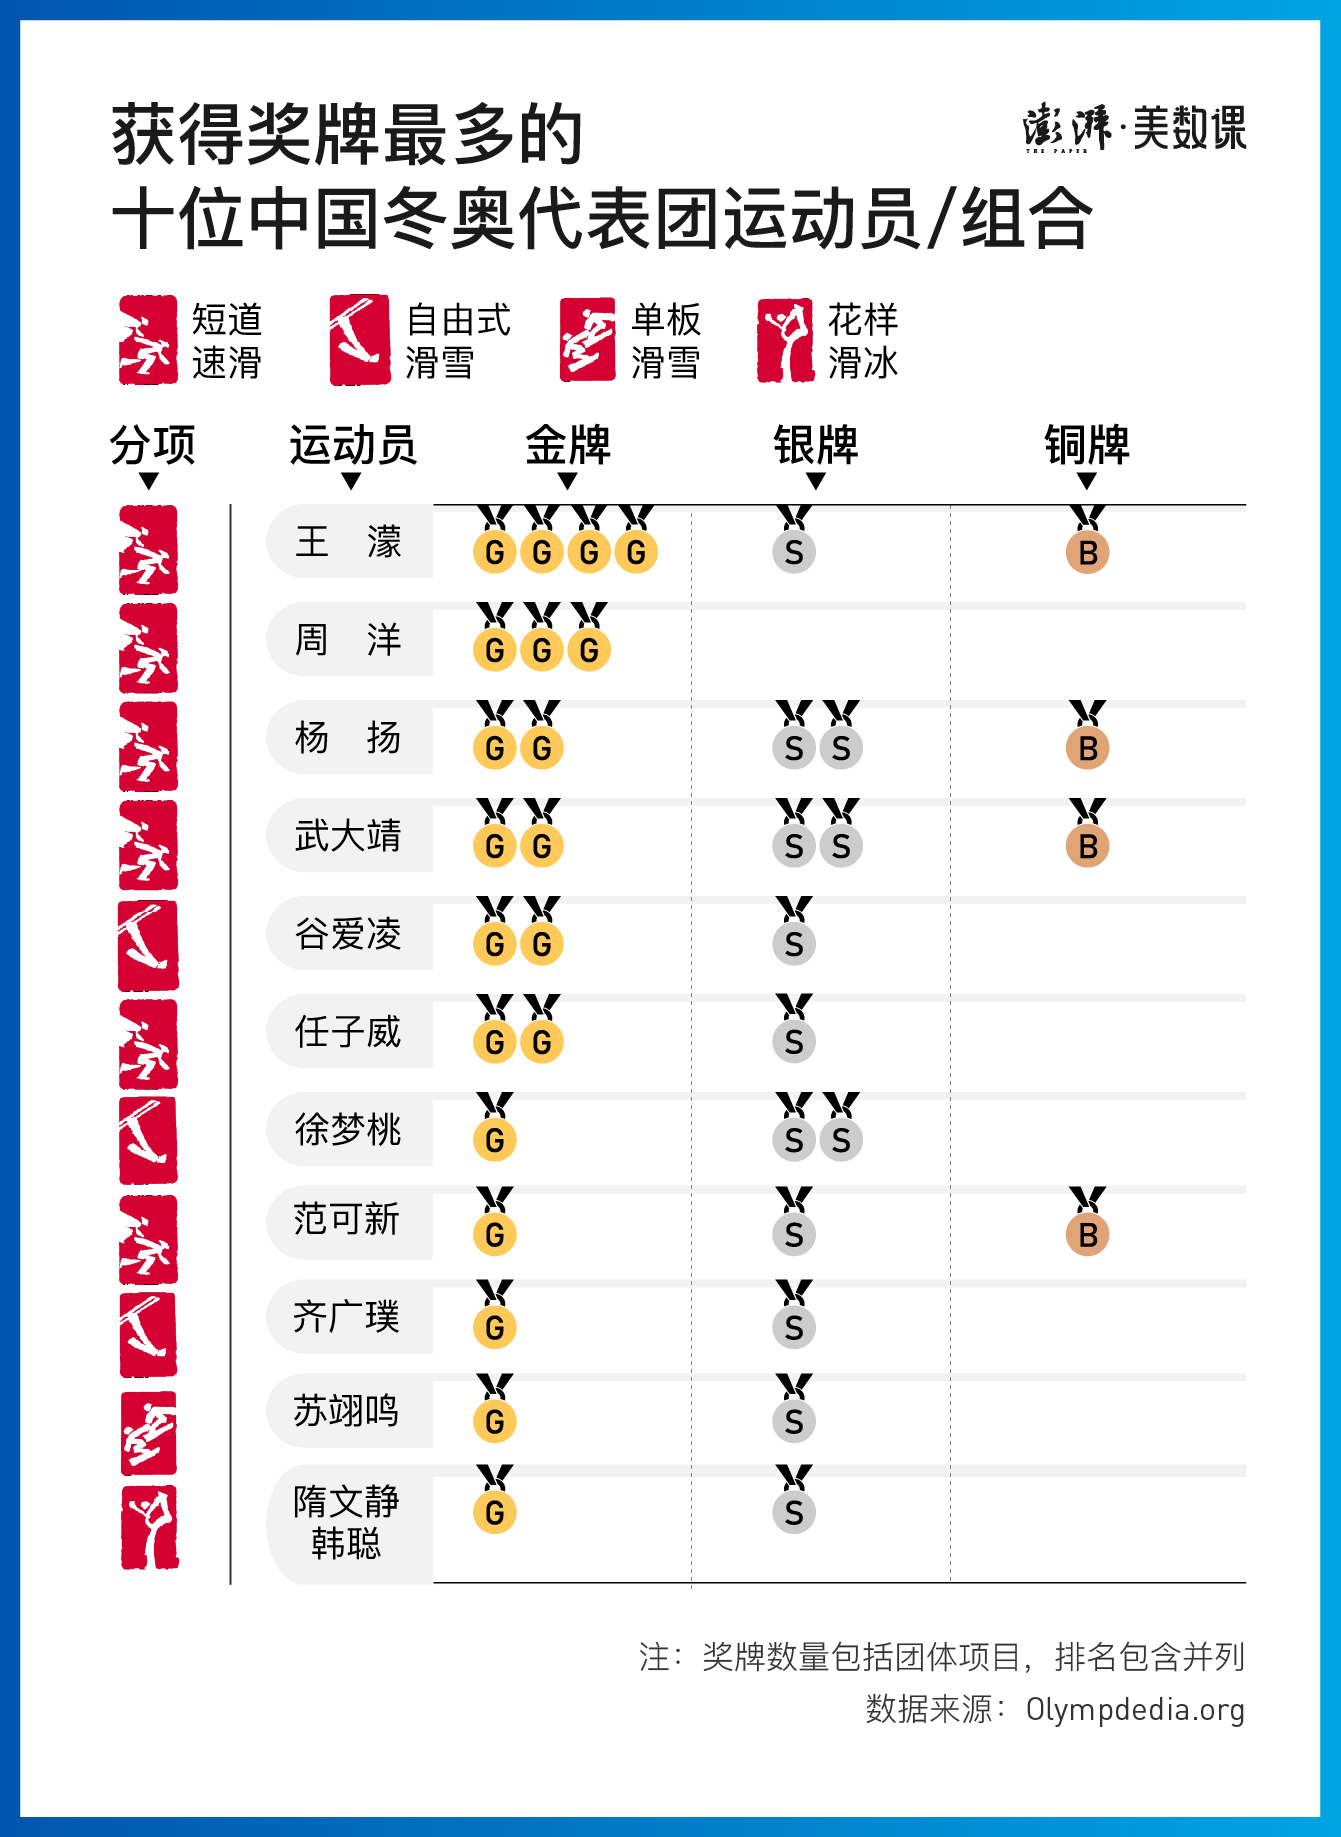 中国第一短道滑雪世界冠军(数说冬奥｜9金创纪录收官，回顾42年中国冬奥夺牌历程)